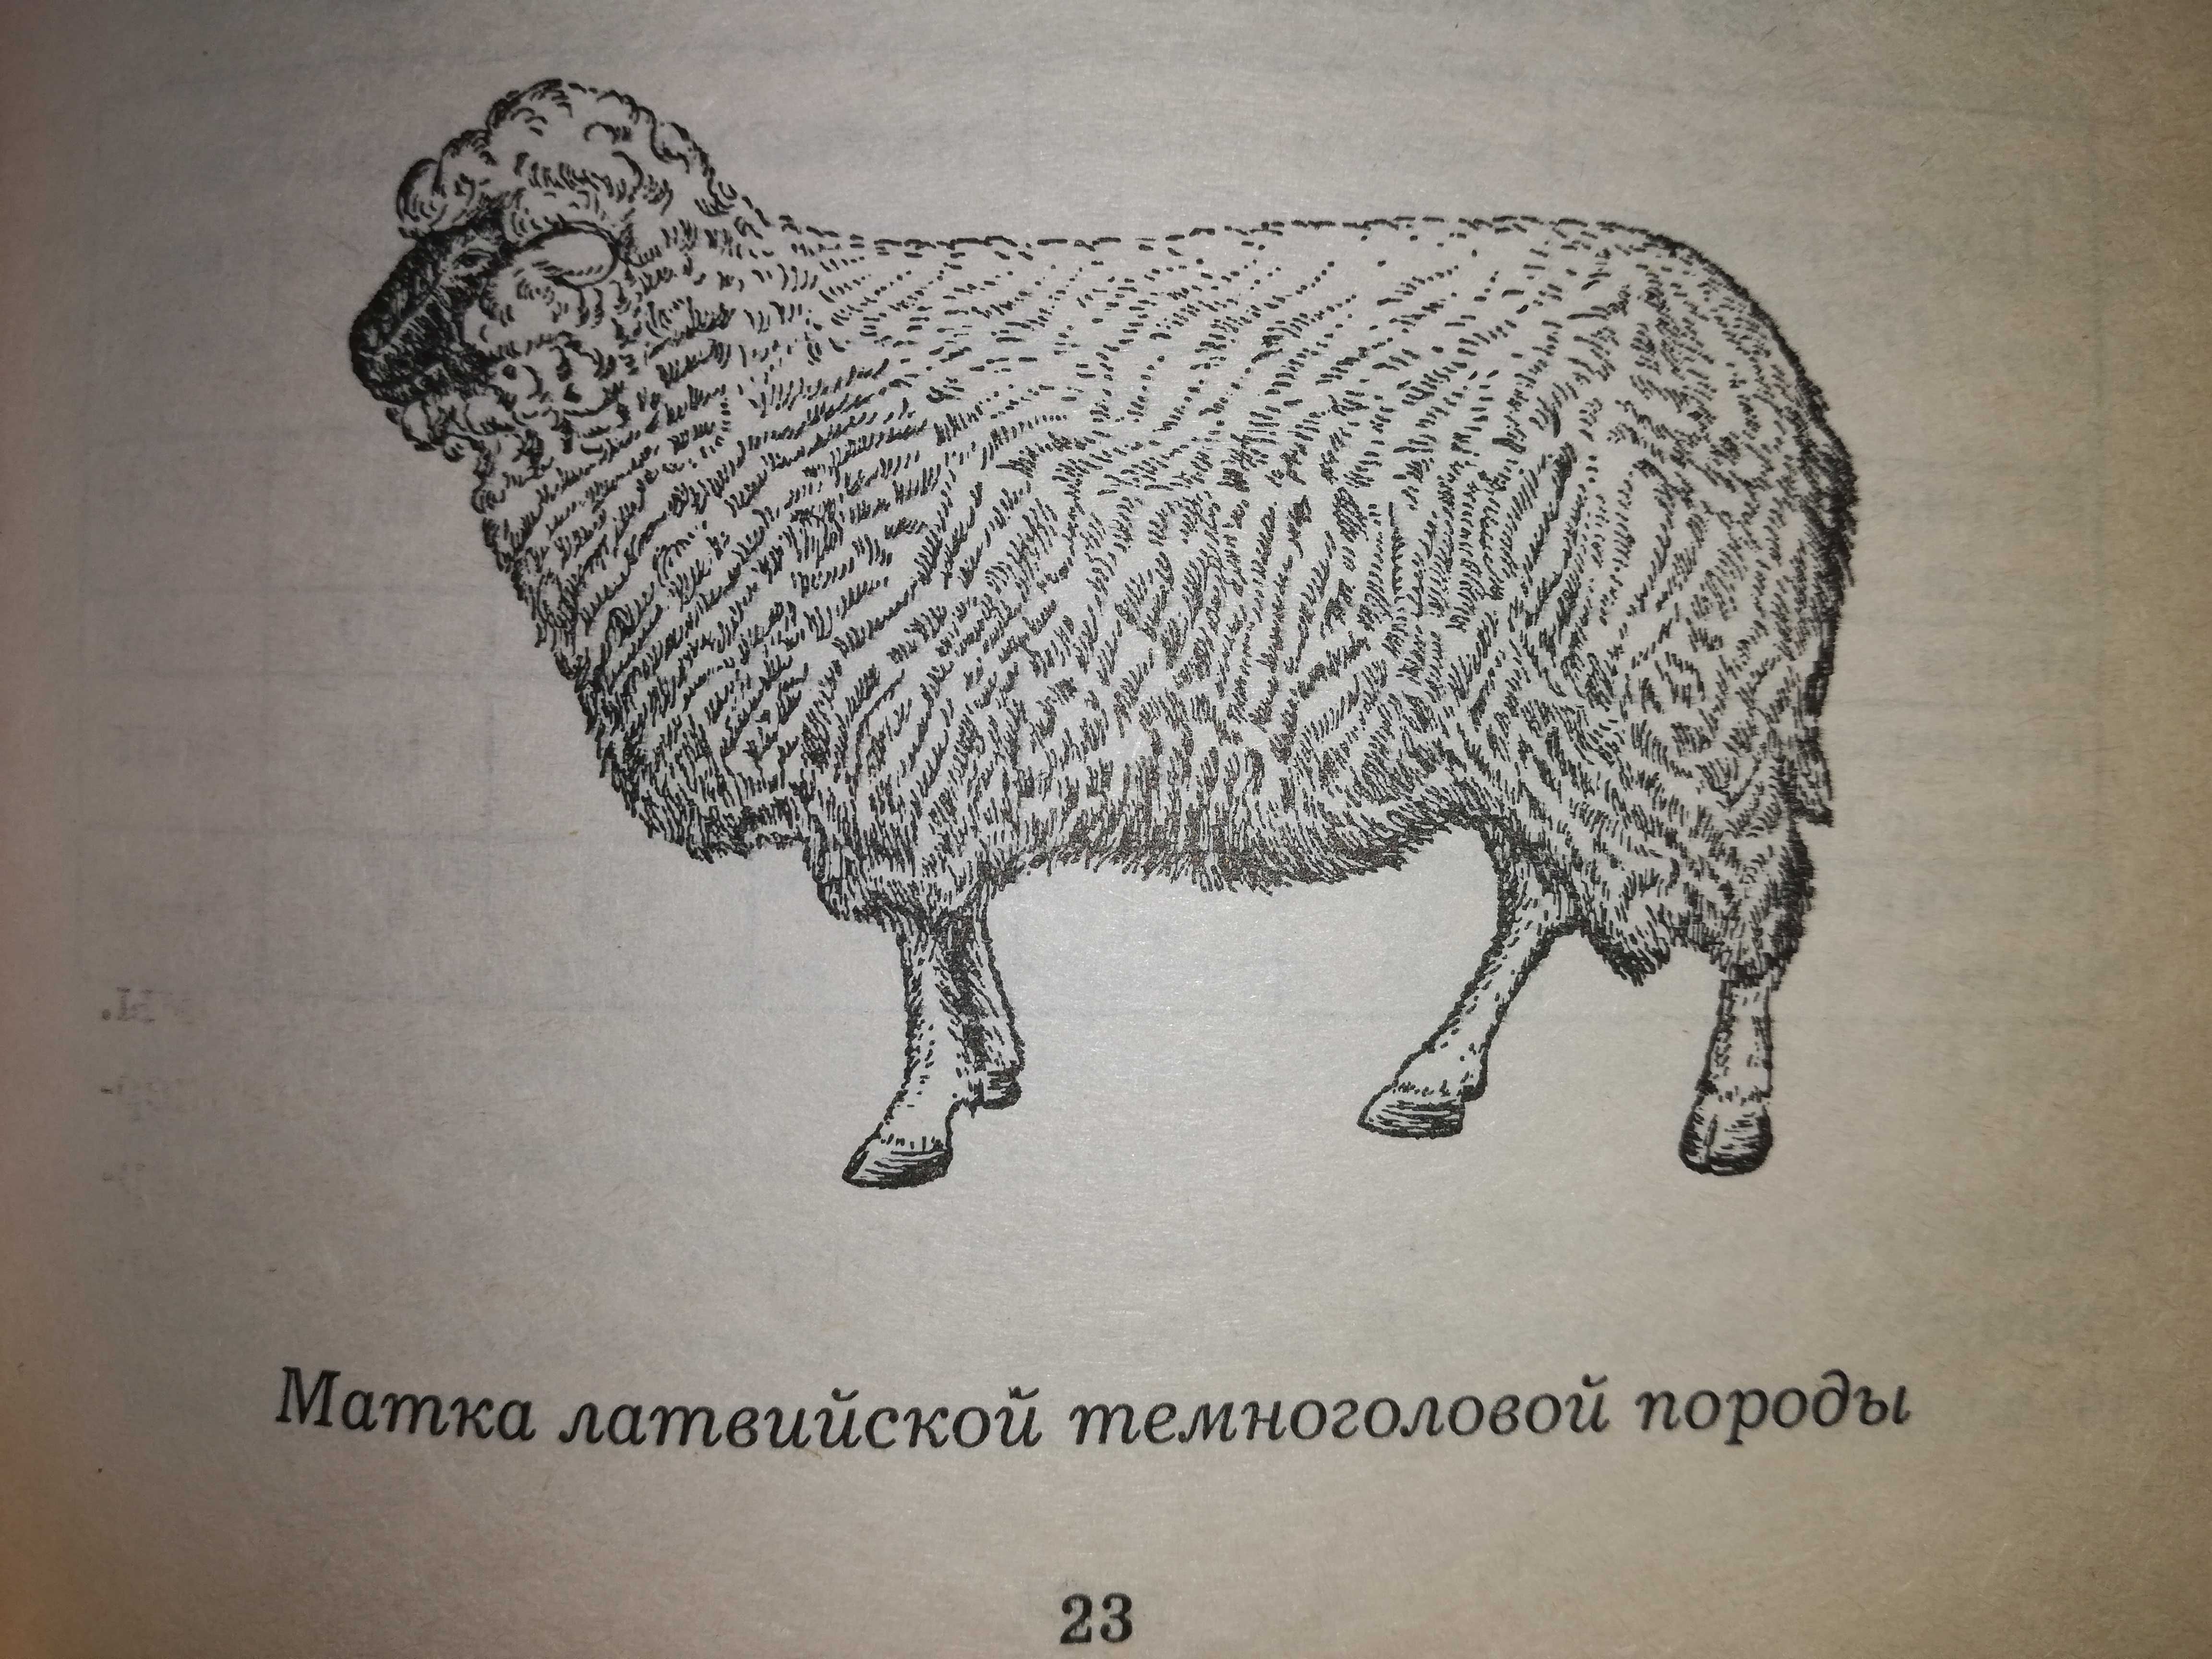 Книга ''Овцы (бараны) и козы (козлы)''